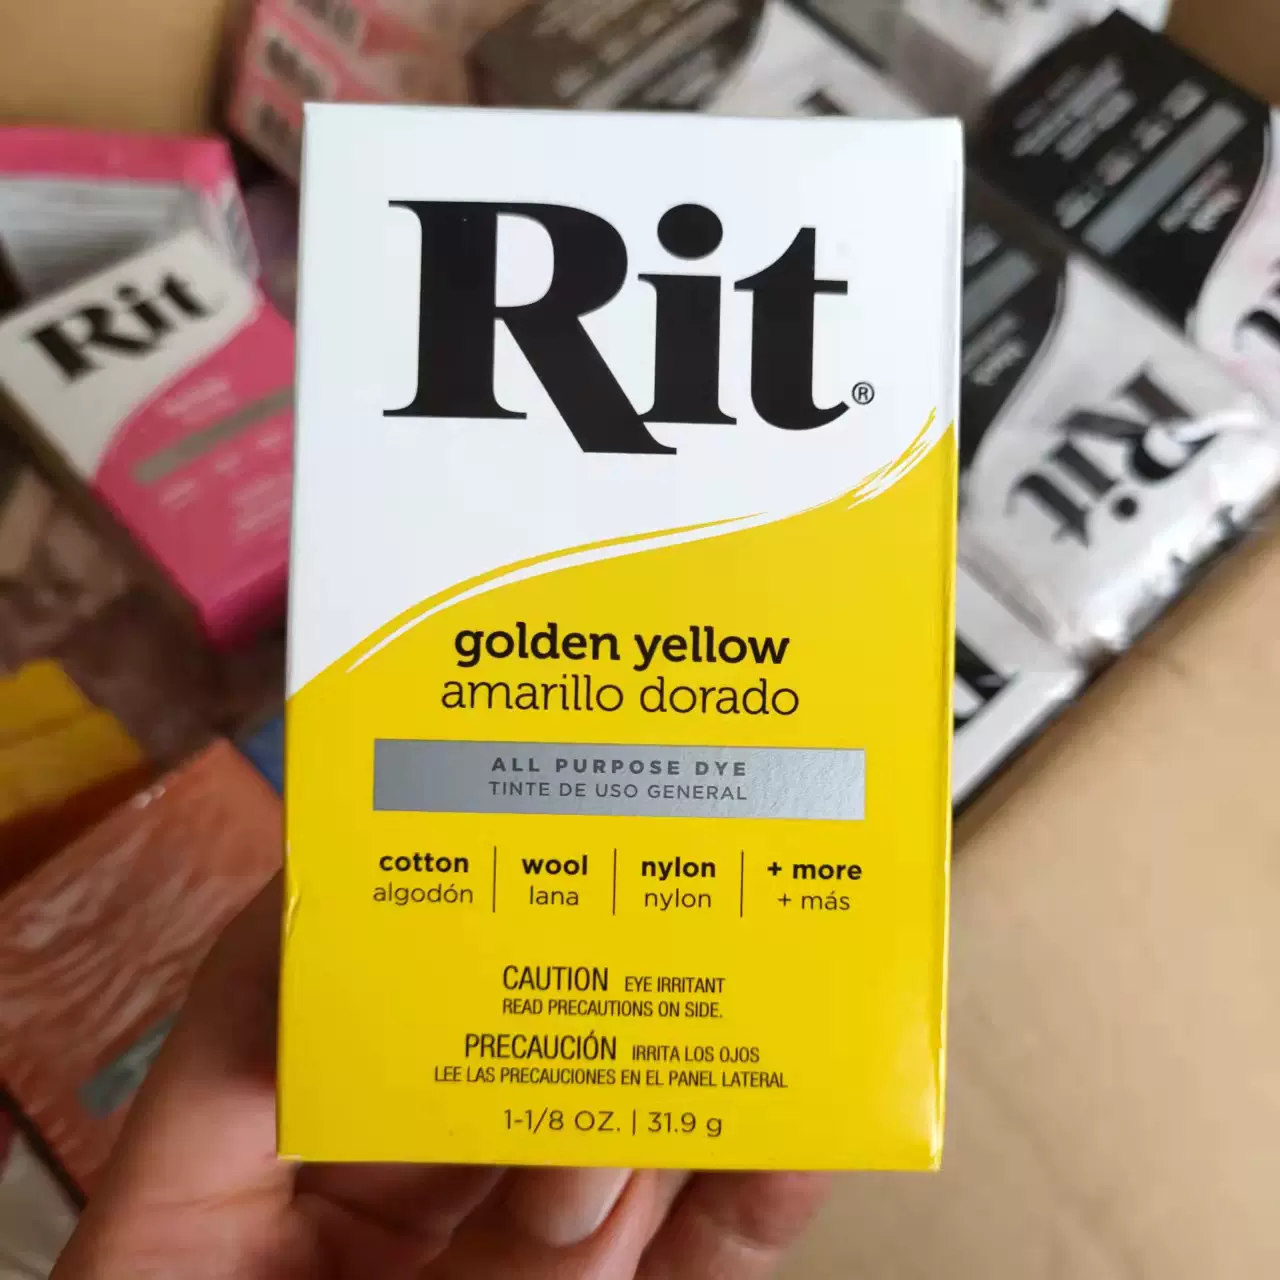 Rit, Black Purpose Powder Dye, 1-1/8 oz 